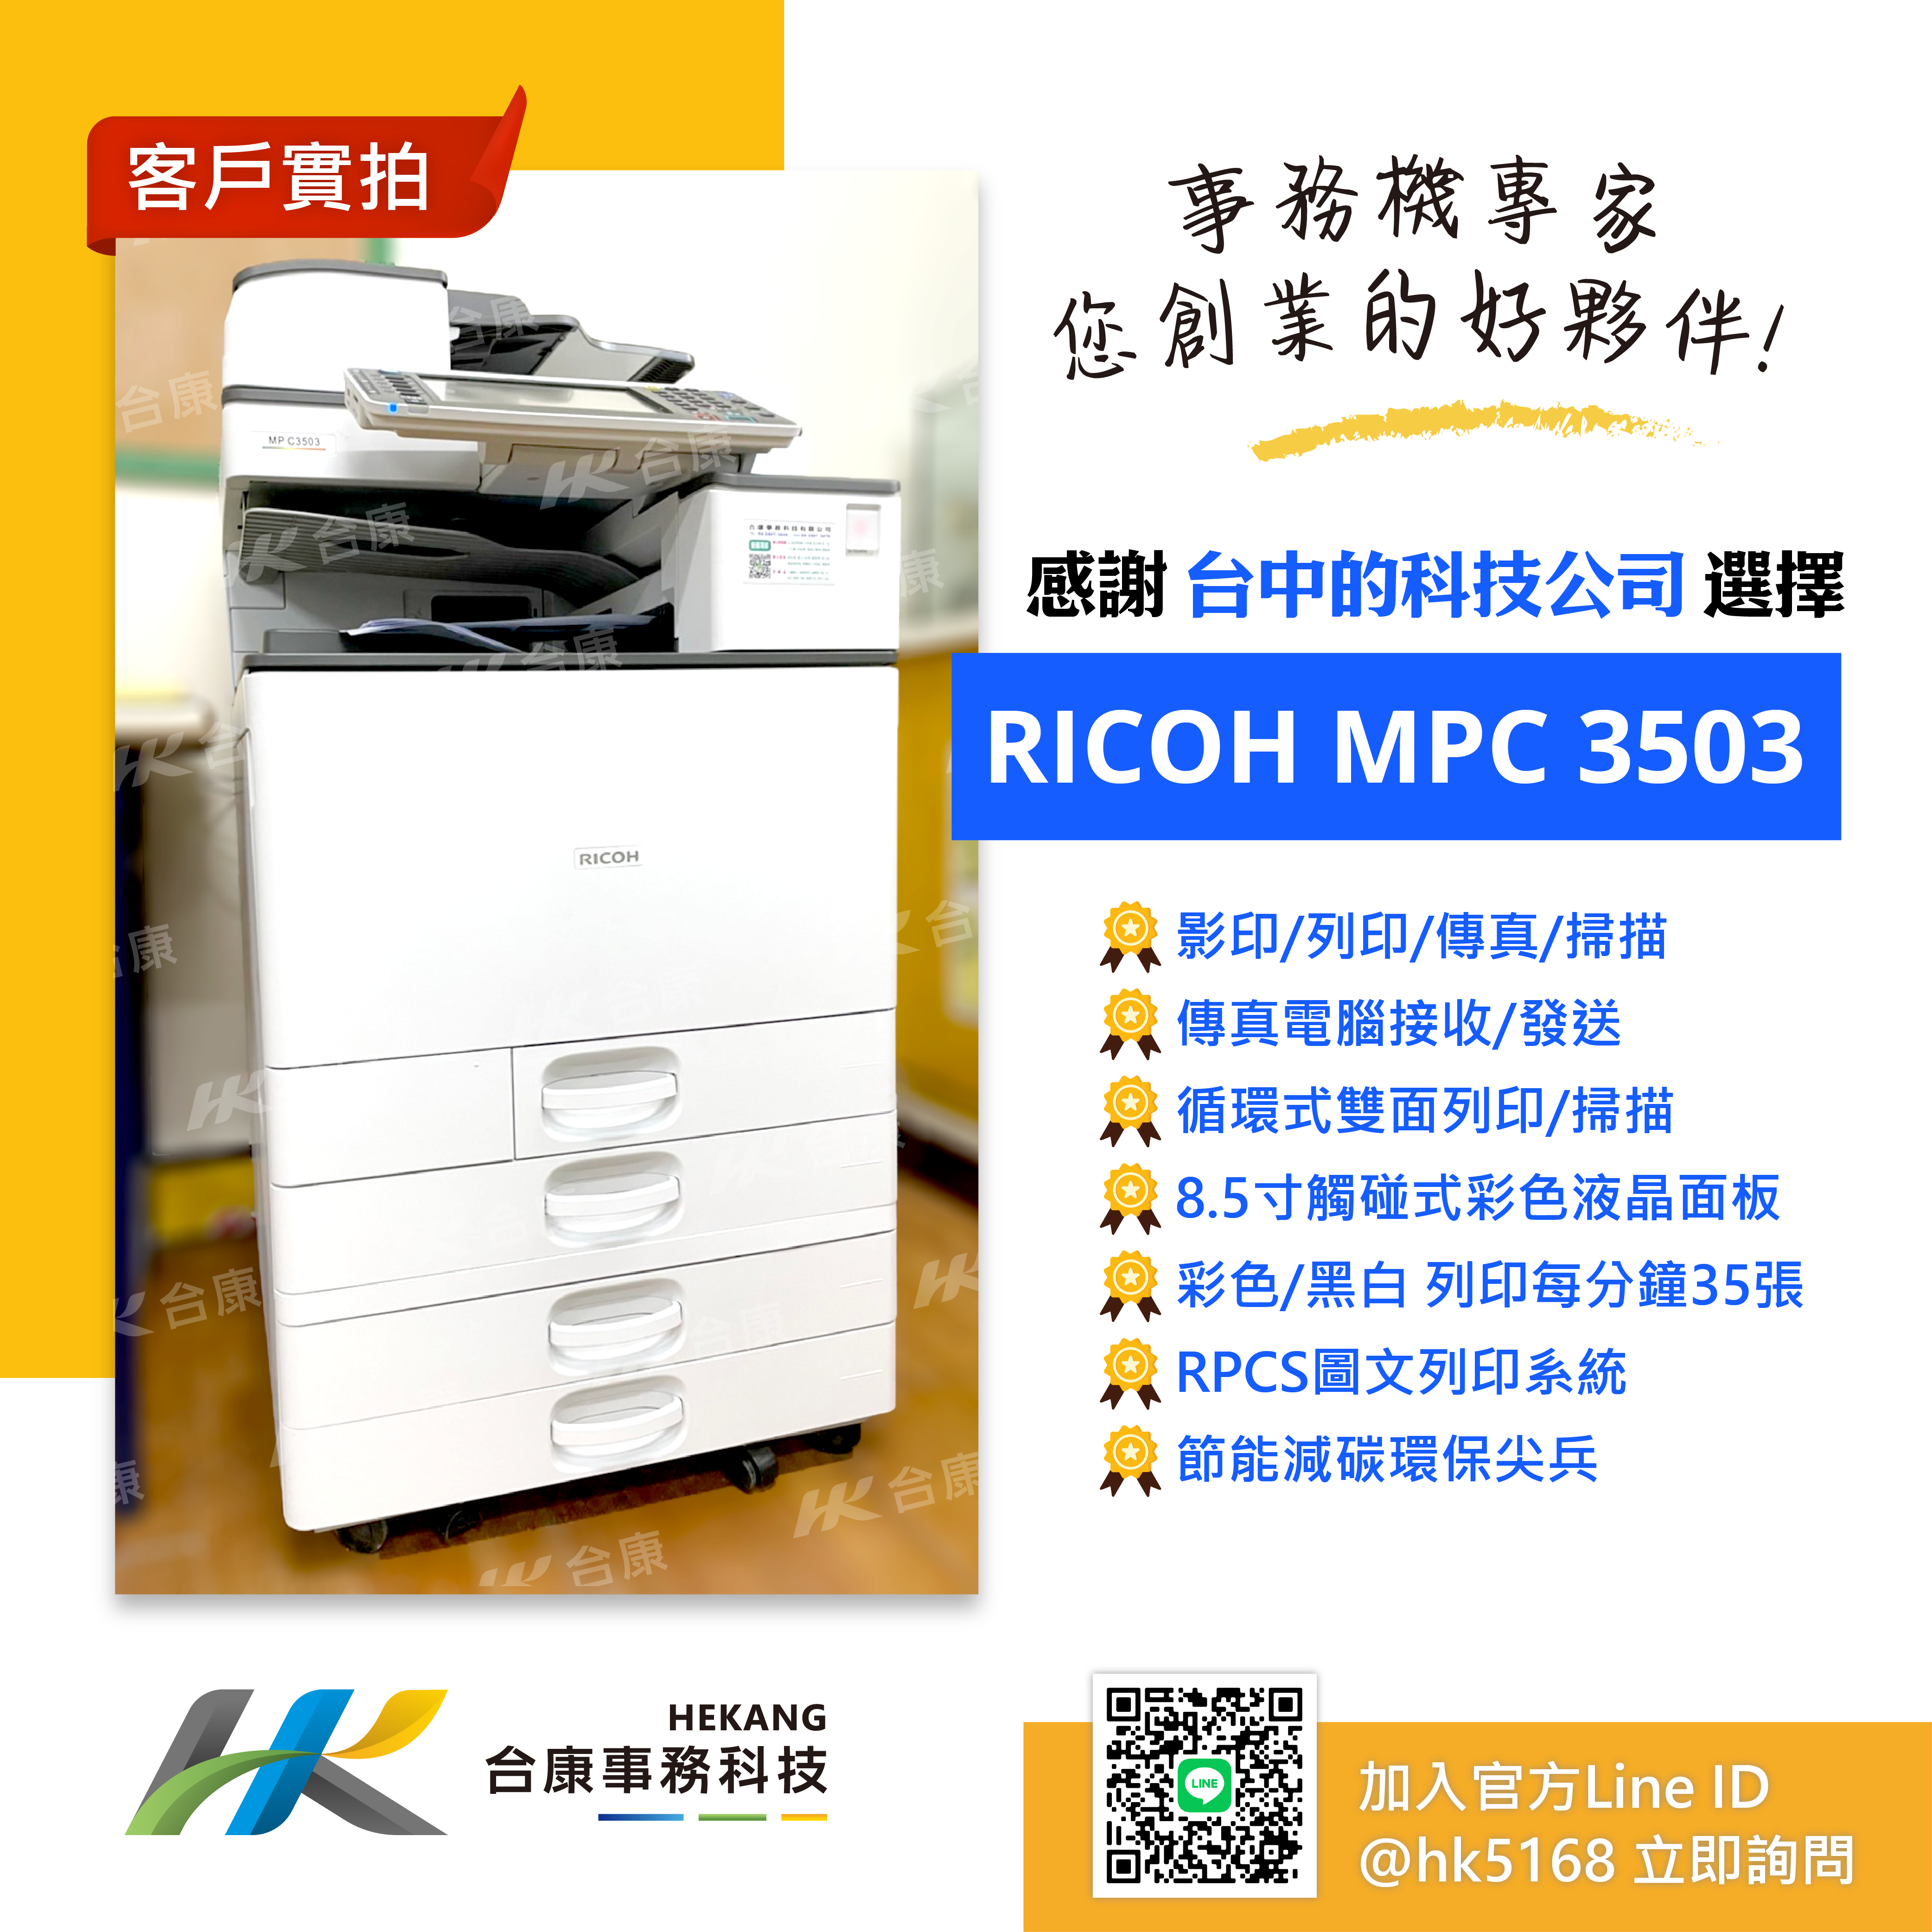 台中的科技公司 承租RICOH MPC3503 案例分享